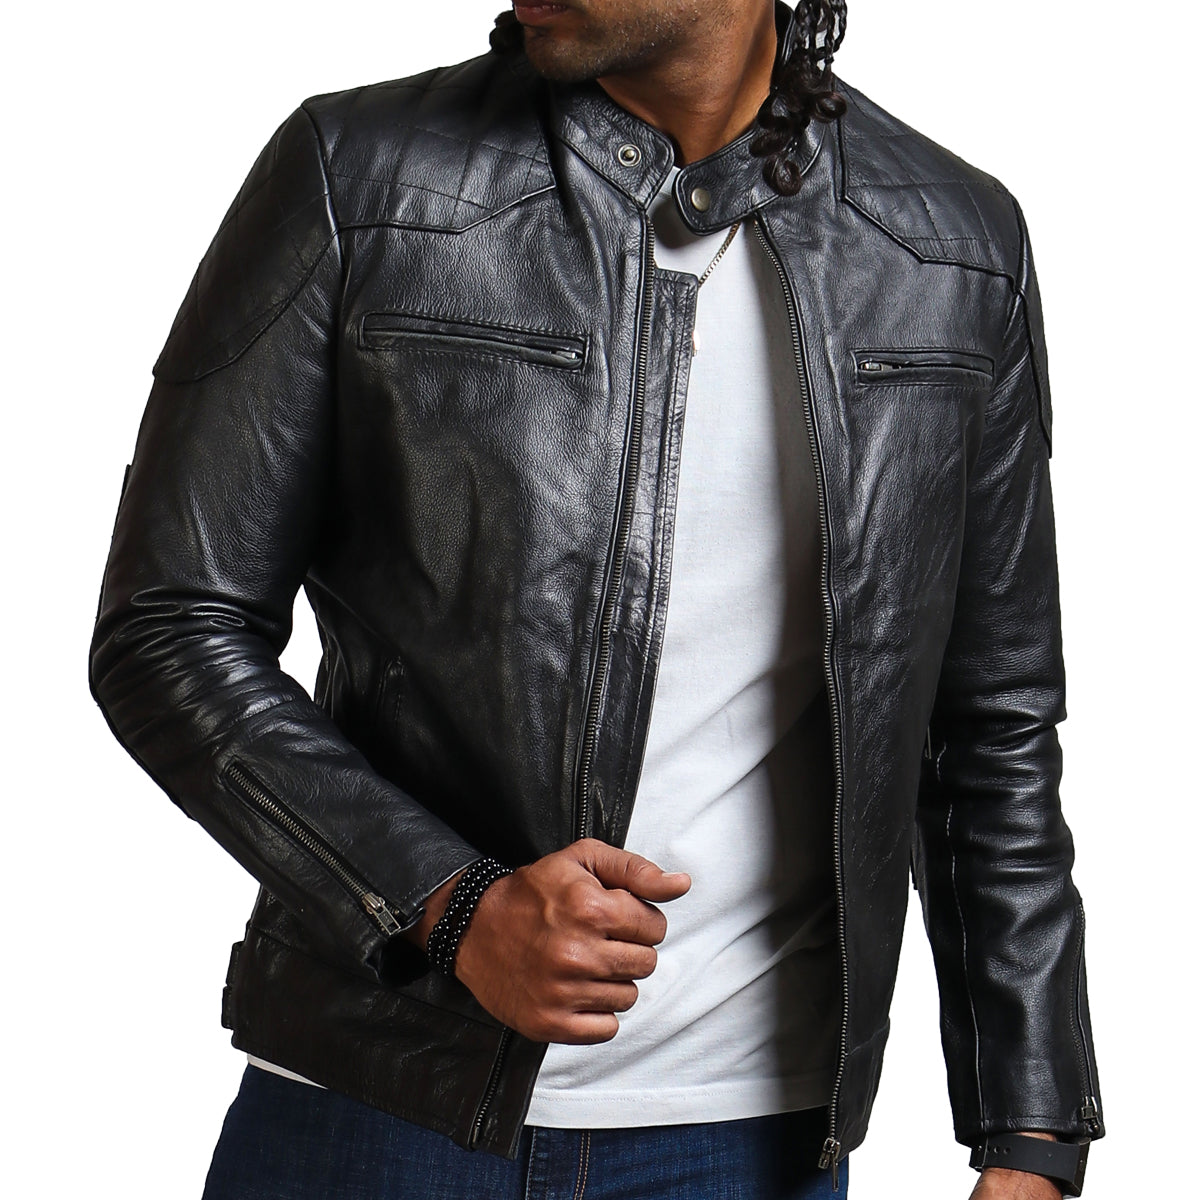 David Beckham Black Leather Jacket For Men's Real Leather Slim Fit Biker  Jacket | eBay